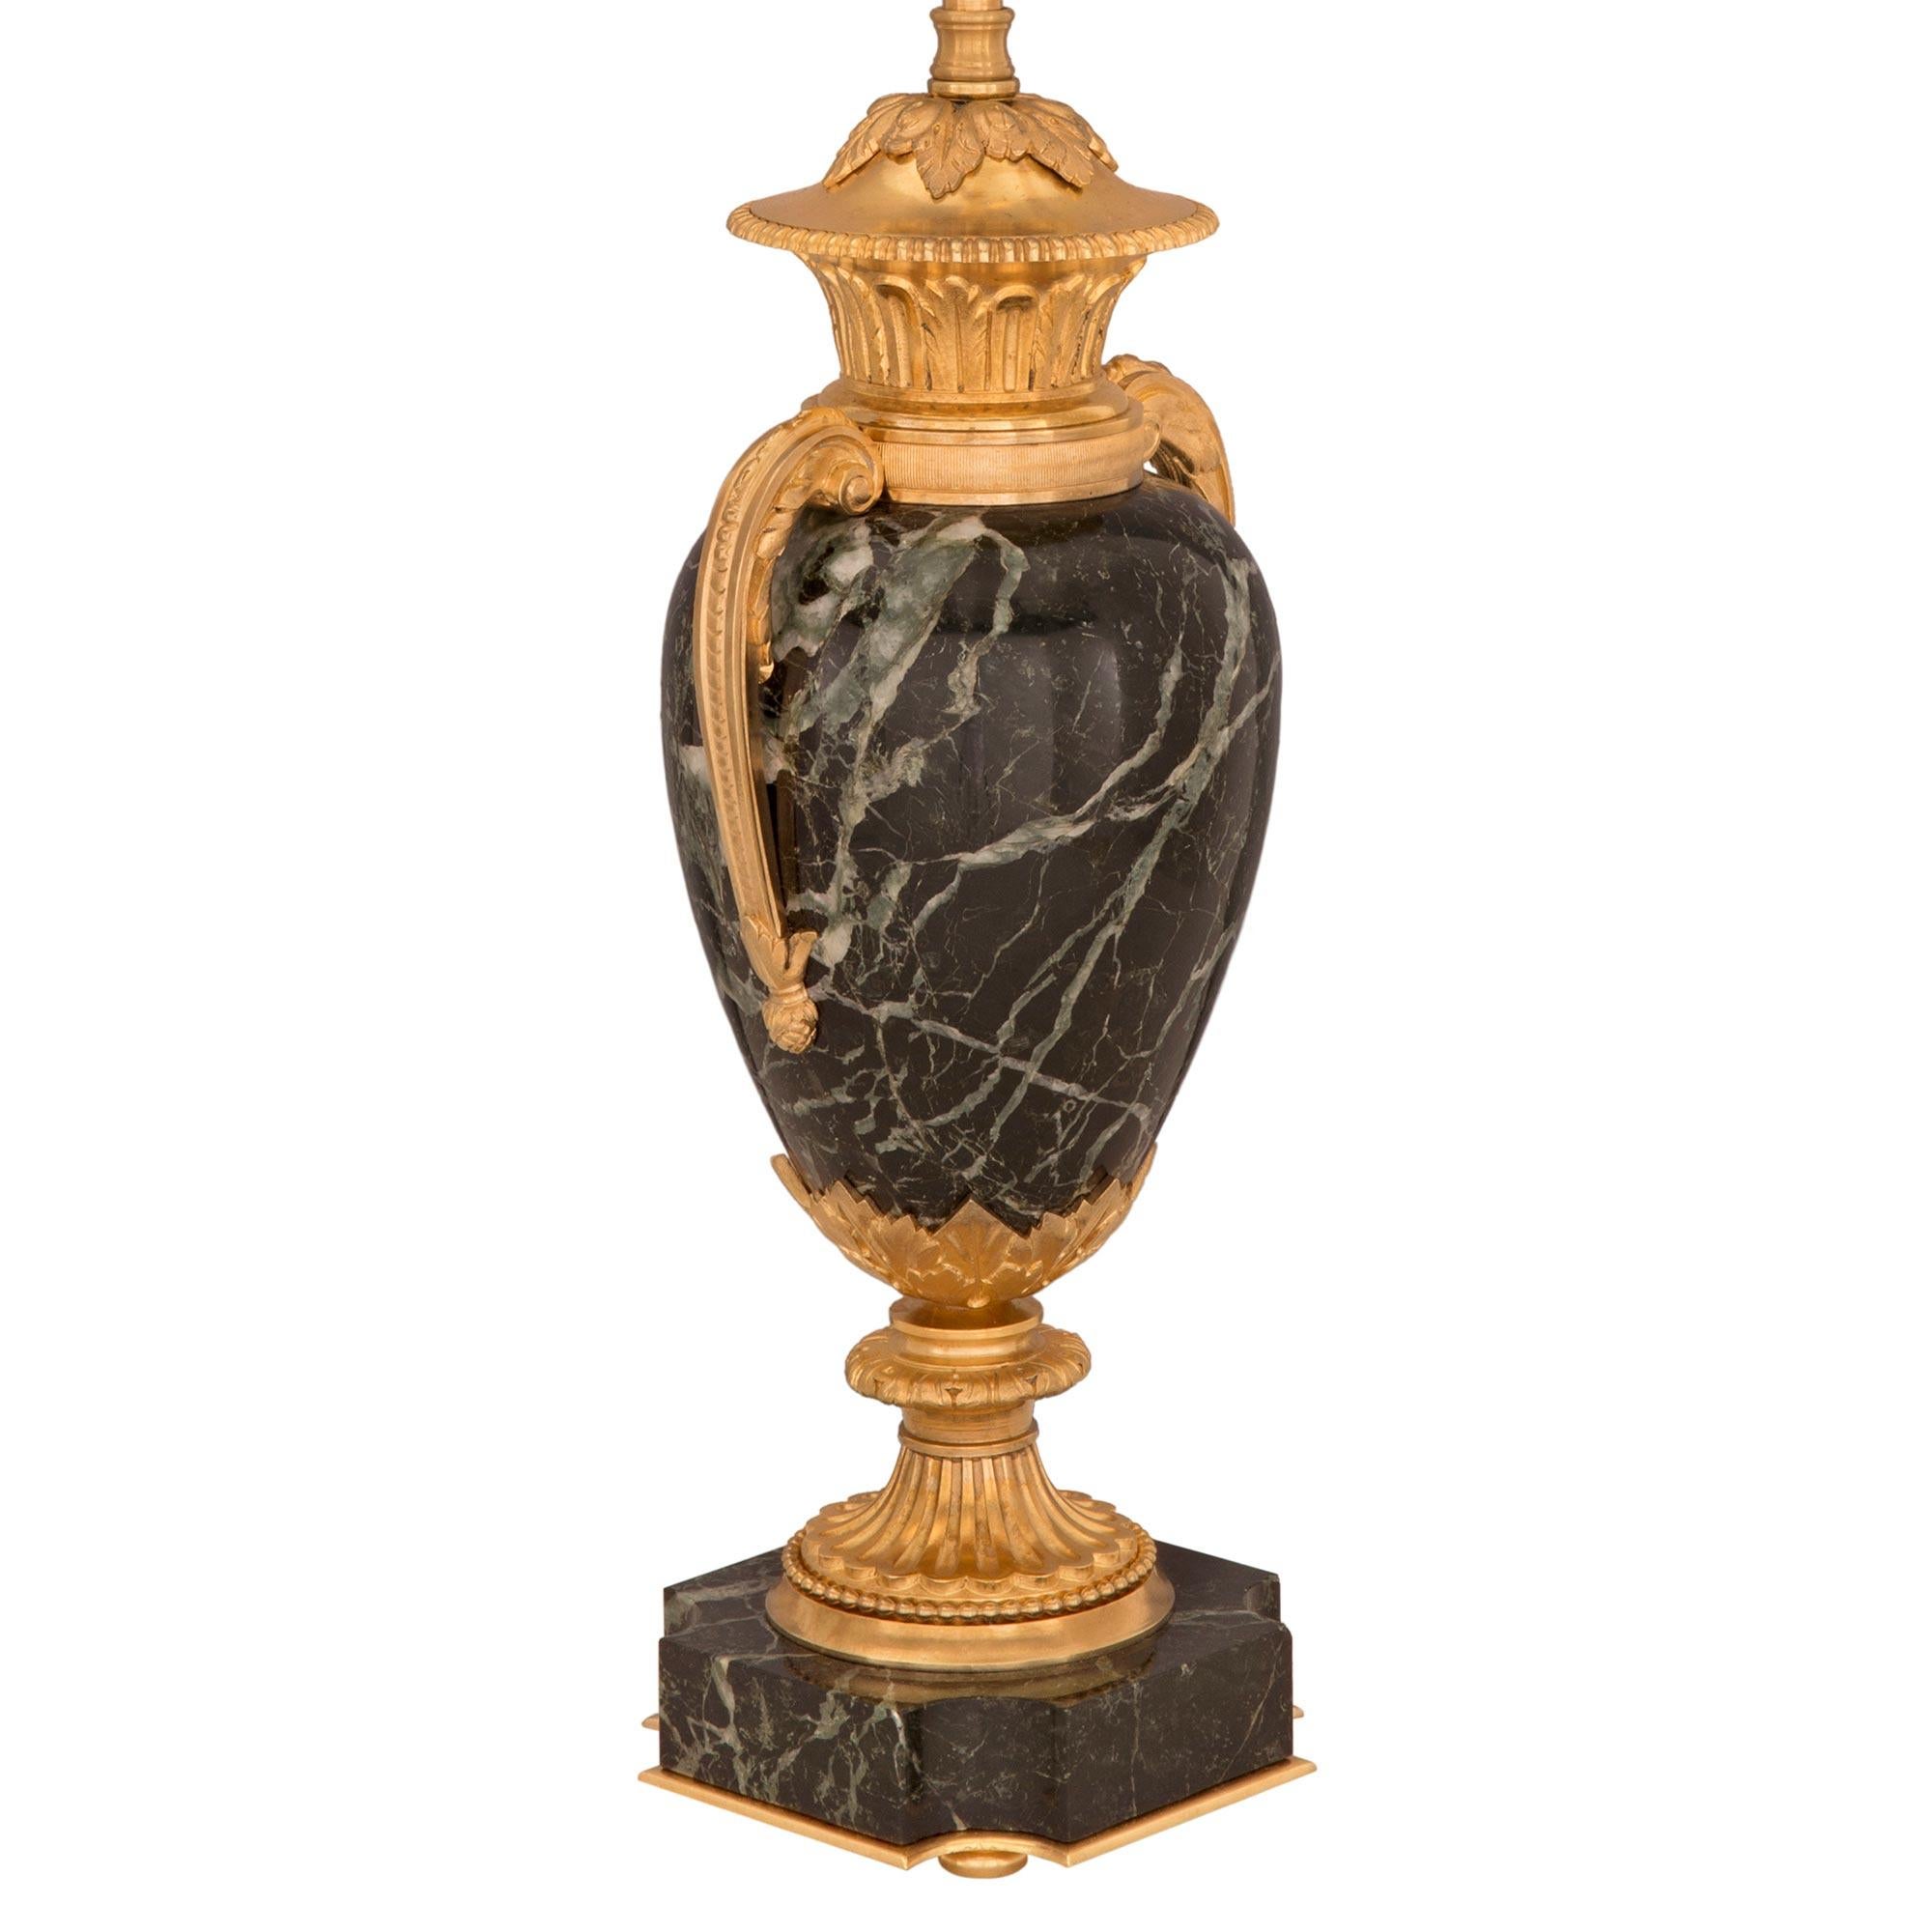 Ein sehr elegantes Paar französischer Marmor- und Ormolu-Lampen aus dem 19. Jahrhundert, Louis XVI st. Vert de Patricia. Jede Leuchte steht auf einem feinen, quadratischen Marmorsockel von Vert de Patricia mit konkaven Ecken, eleganten Ormolu-Füßen